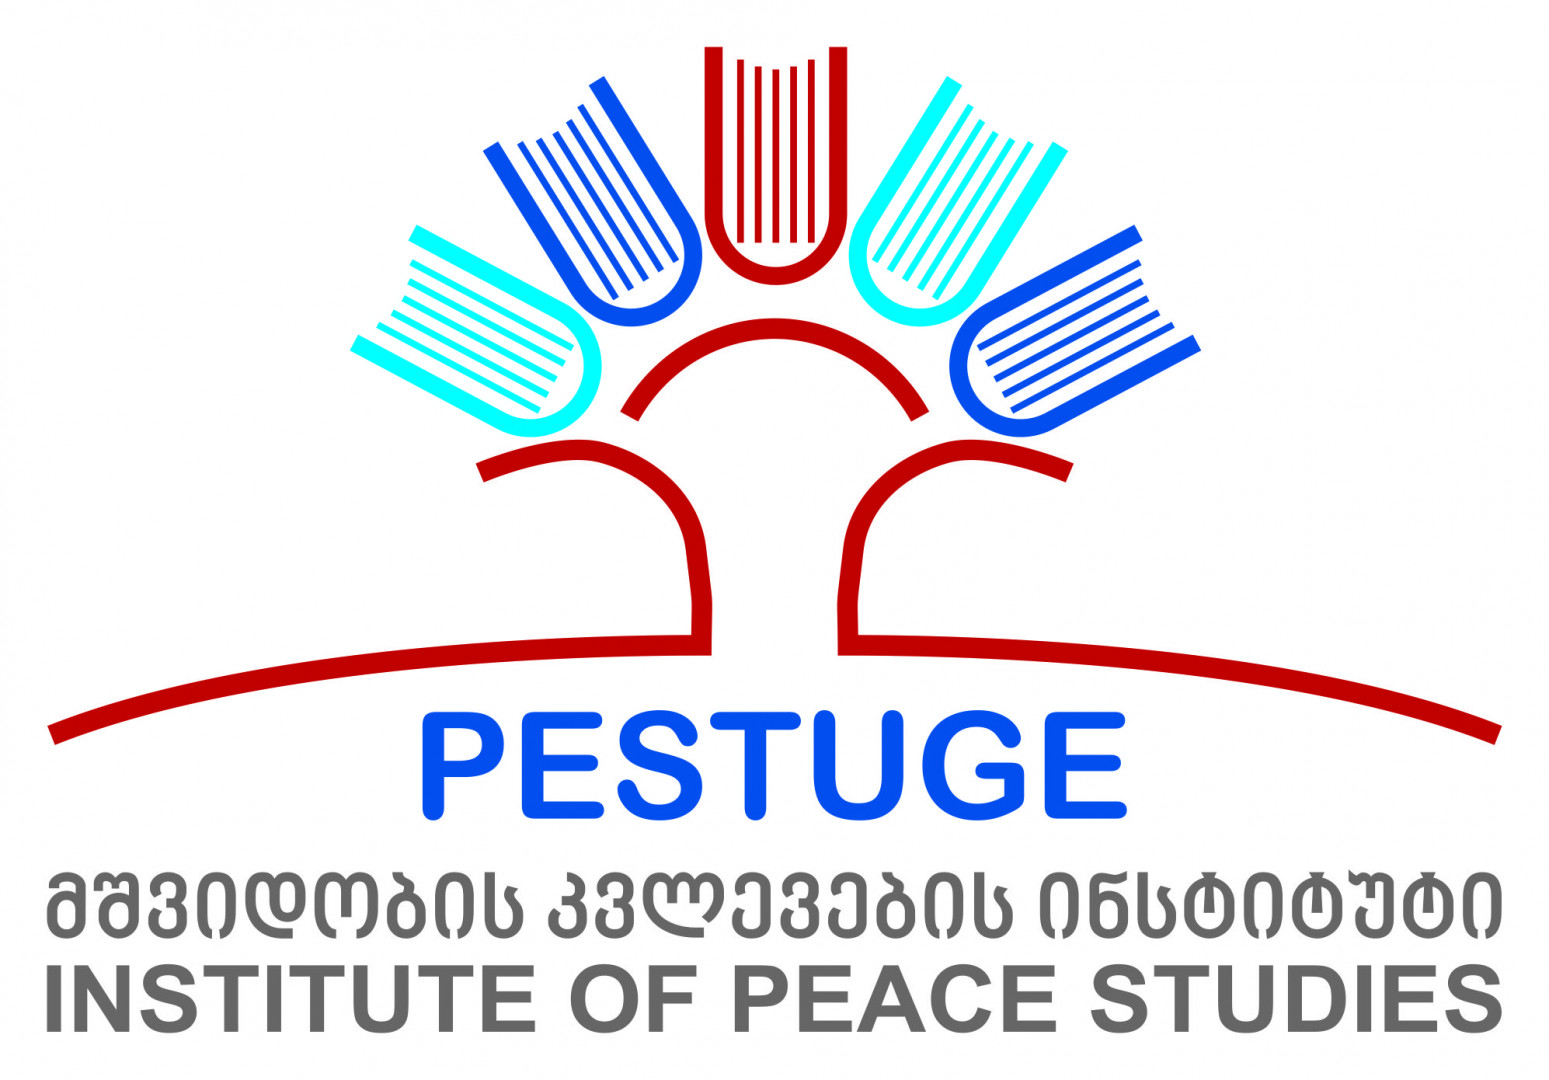 CSG-ის სტუდენტთა პრაქტიკისთვის PESTUGE-ს ფარგლებში ურთიერთთანამშრომლობის მემორანდუმი გაფორმდა